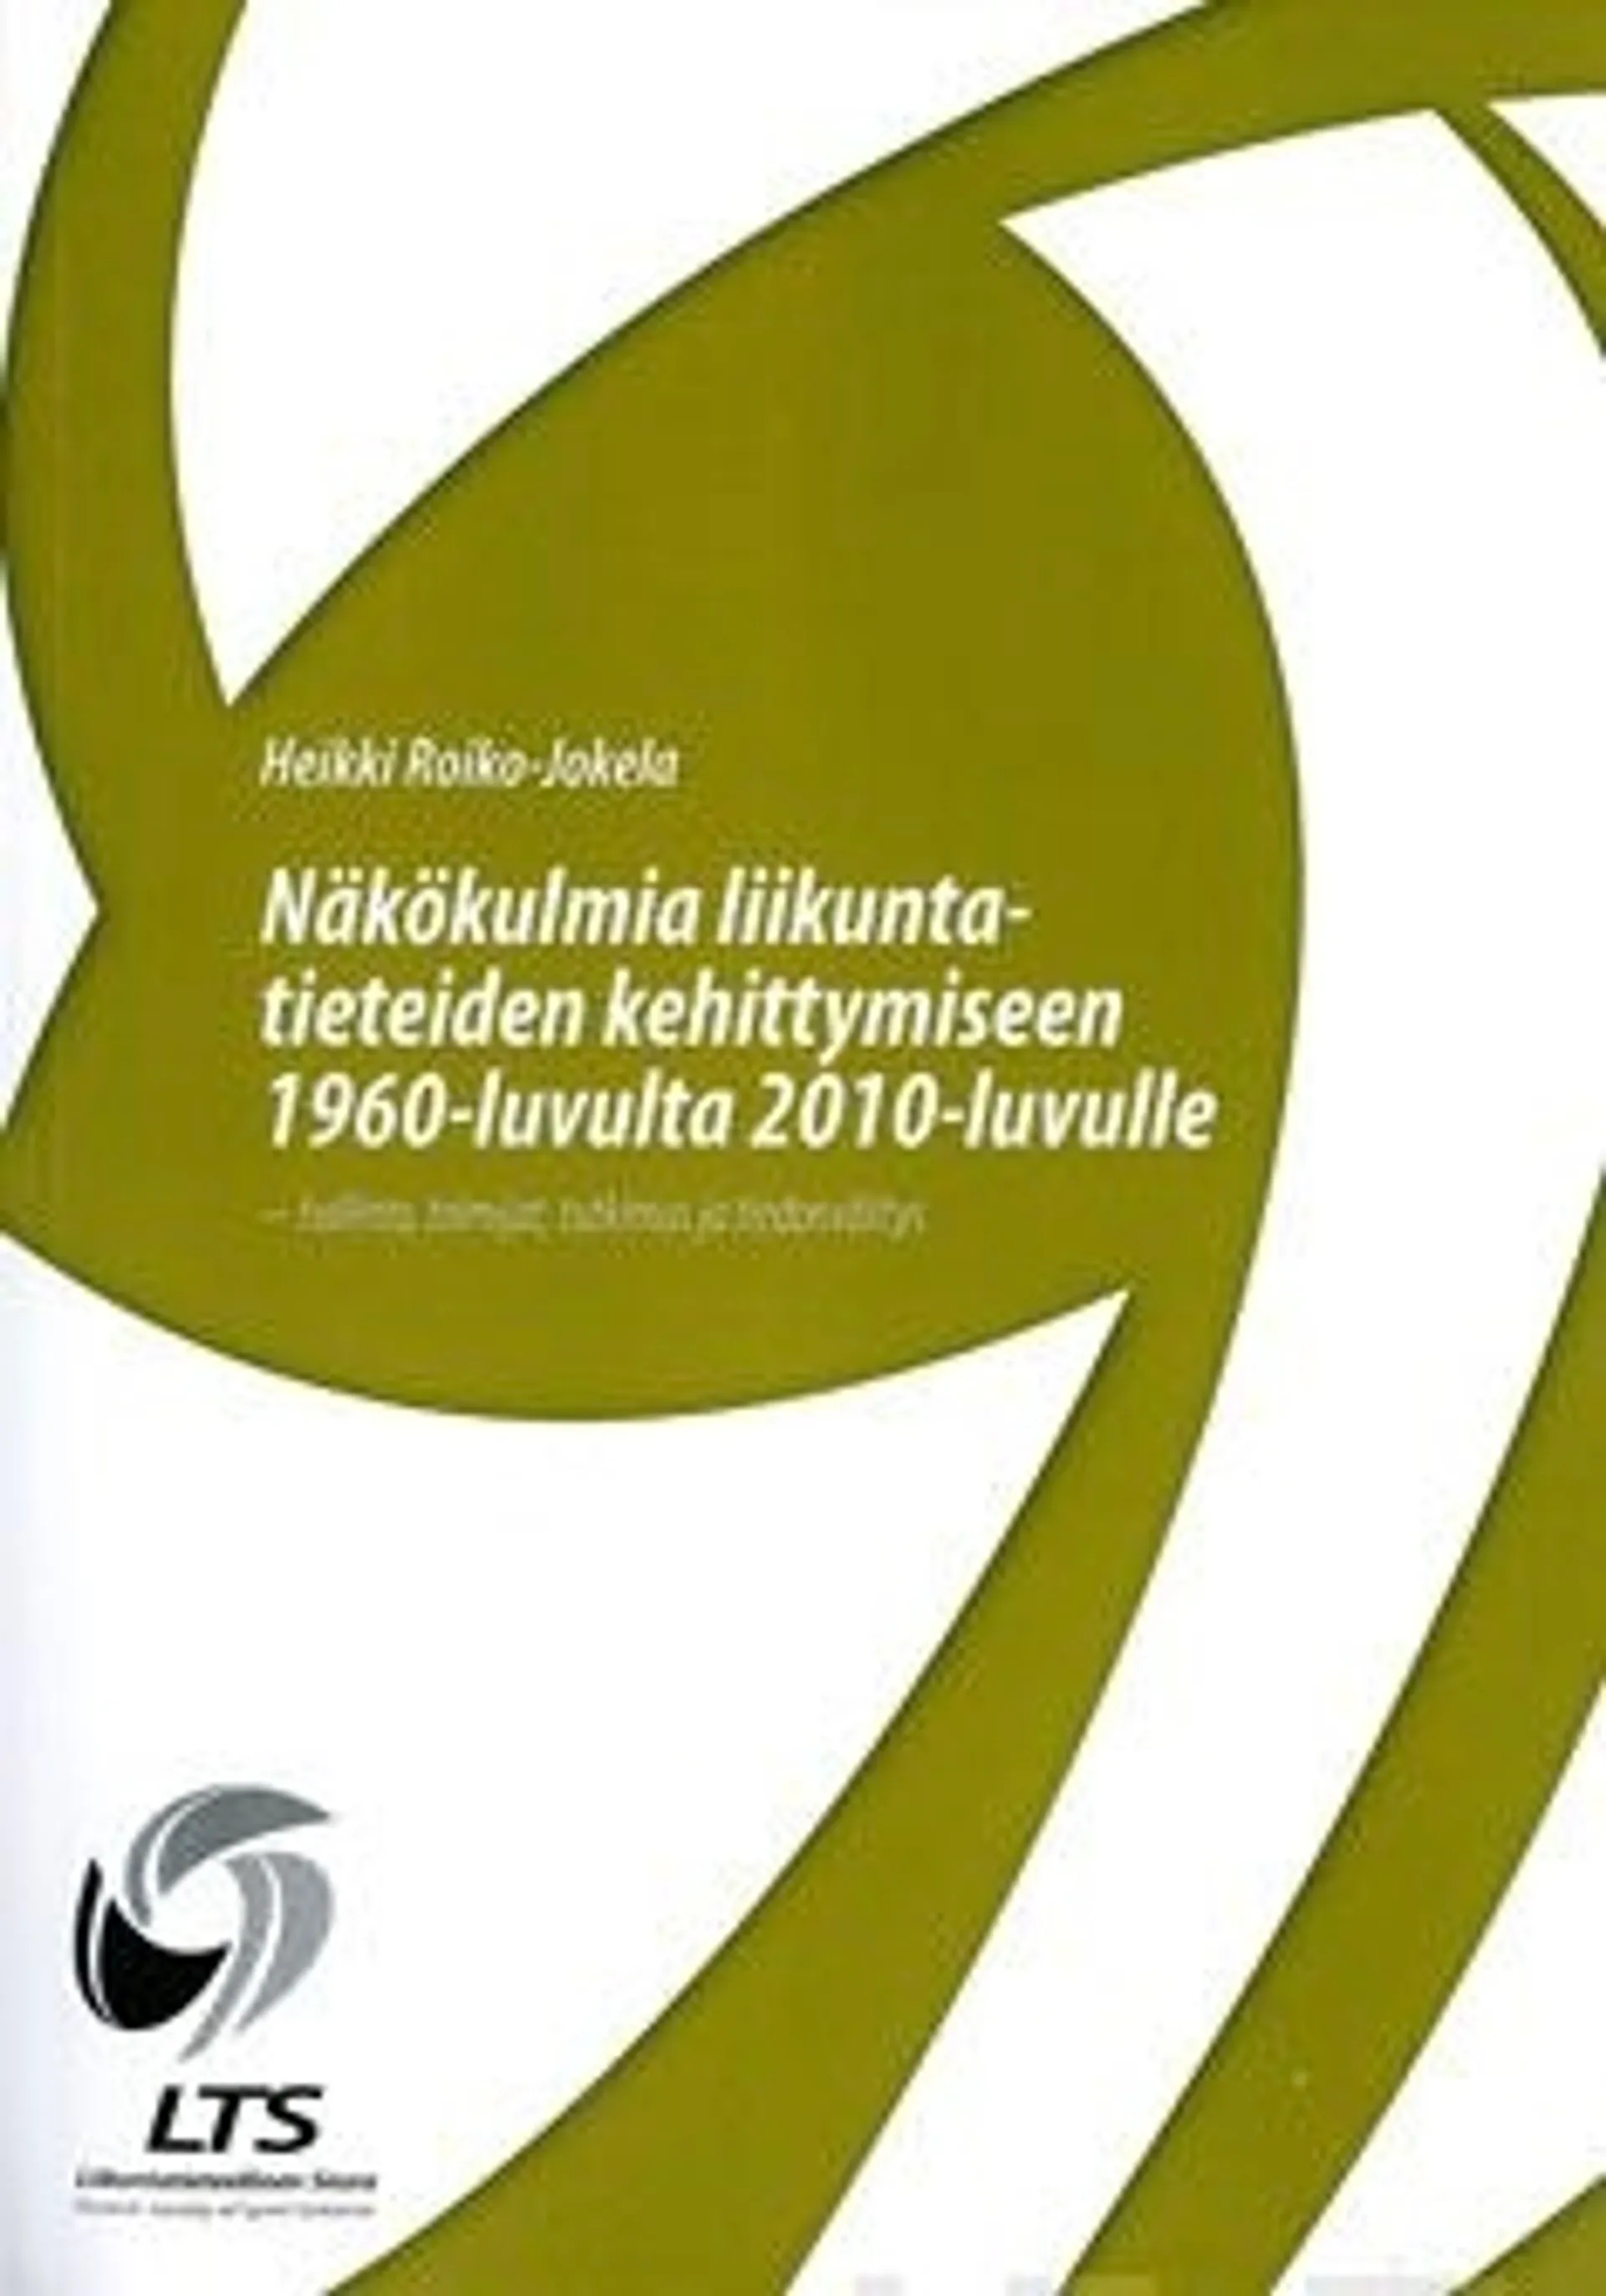 Roiko-Jokela, Näkökulmia liikuntatieteiden kehittymiseen 1960-luvulta 2010-luvulle